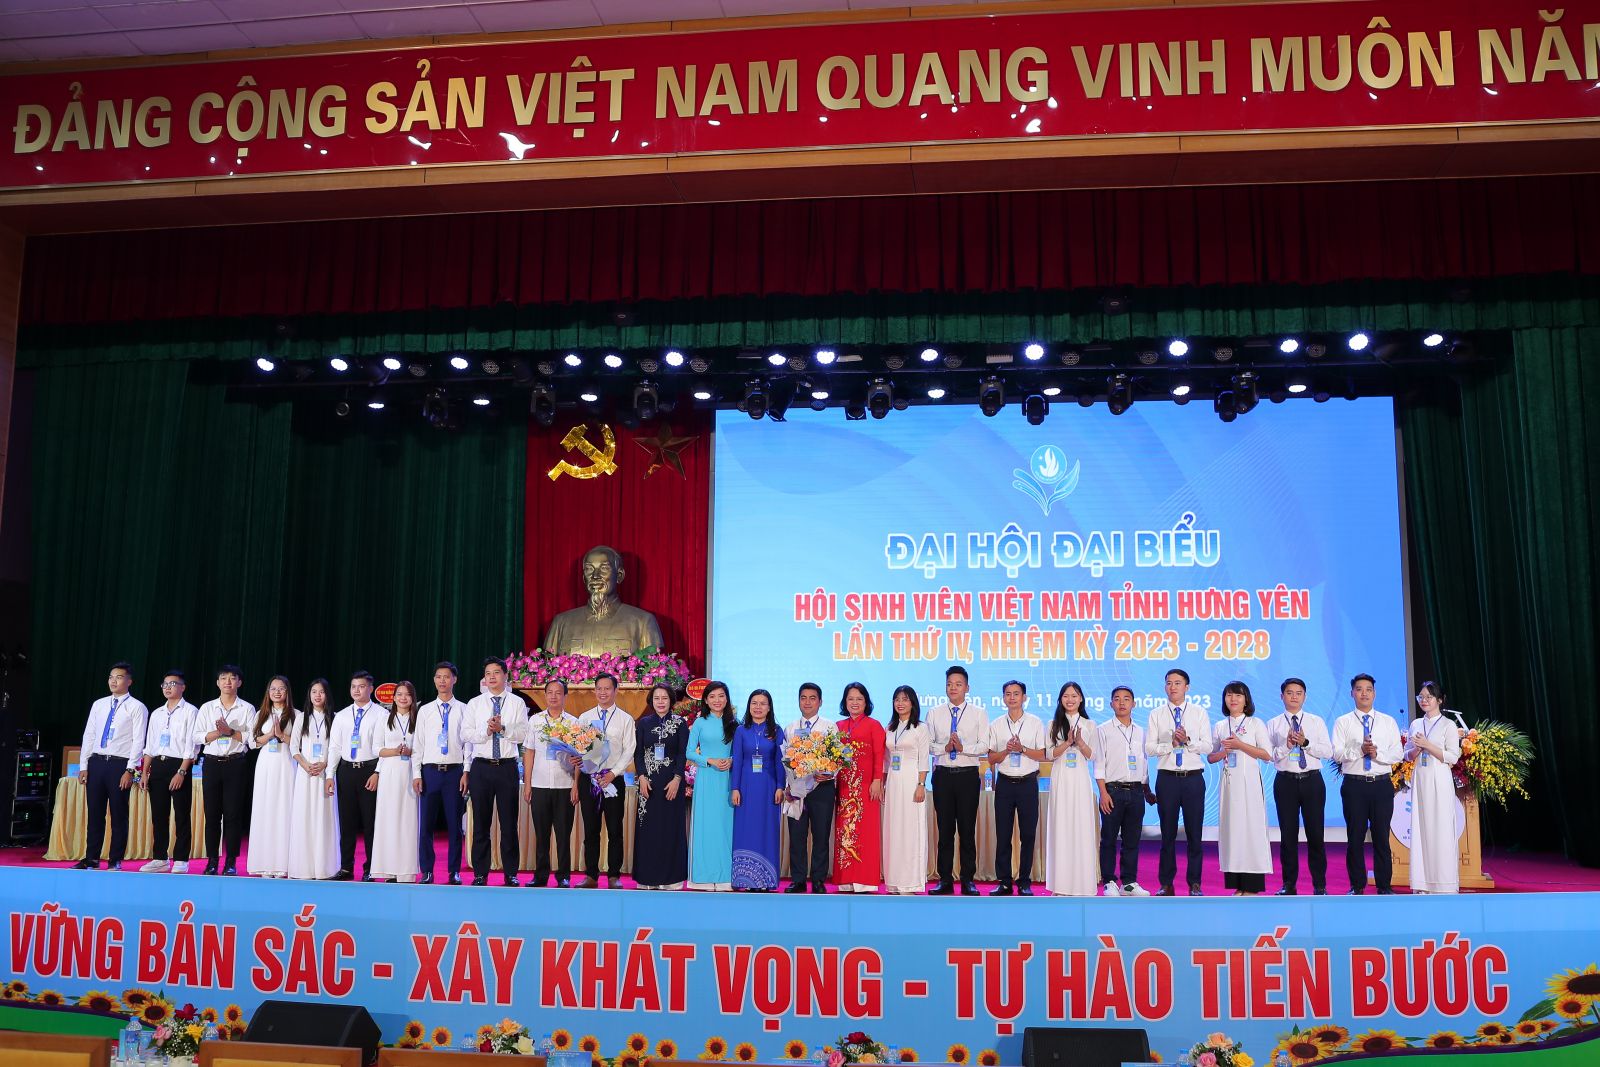 Ðại hội đại biểu Hội sinh viên Việt Nam tỉnh Hưng Yên lần thứ IV, nhiệm kỳ 2023 - 2028 thành công tốt đẹp